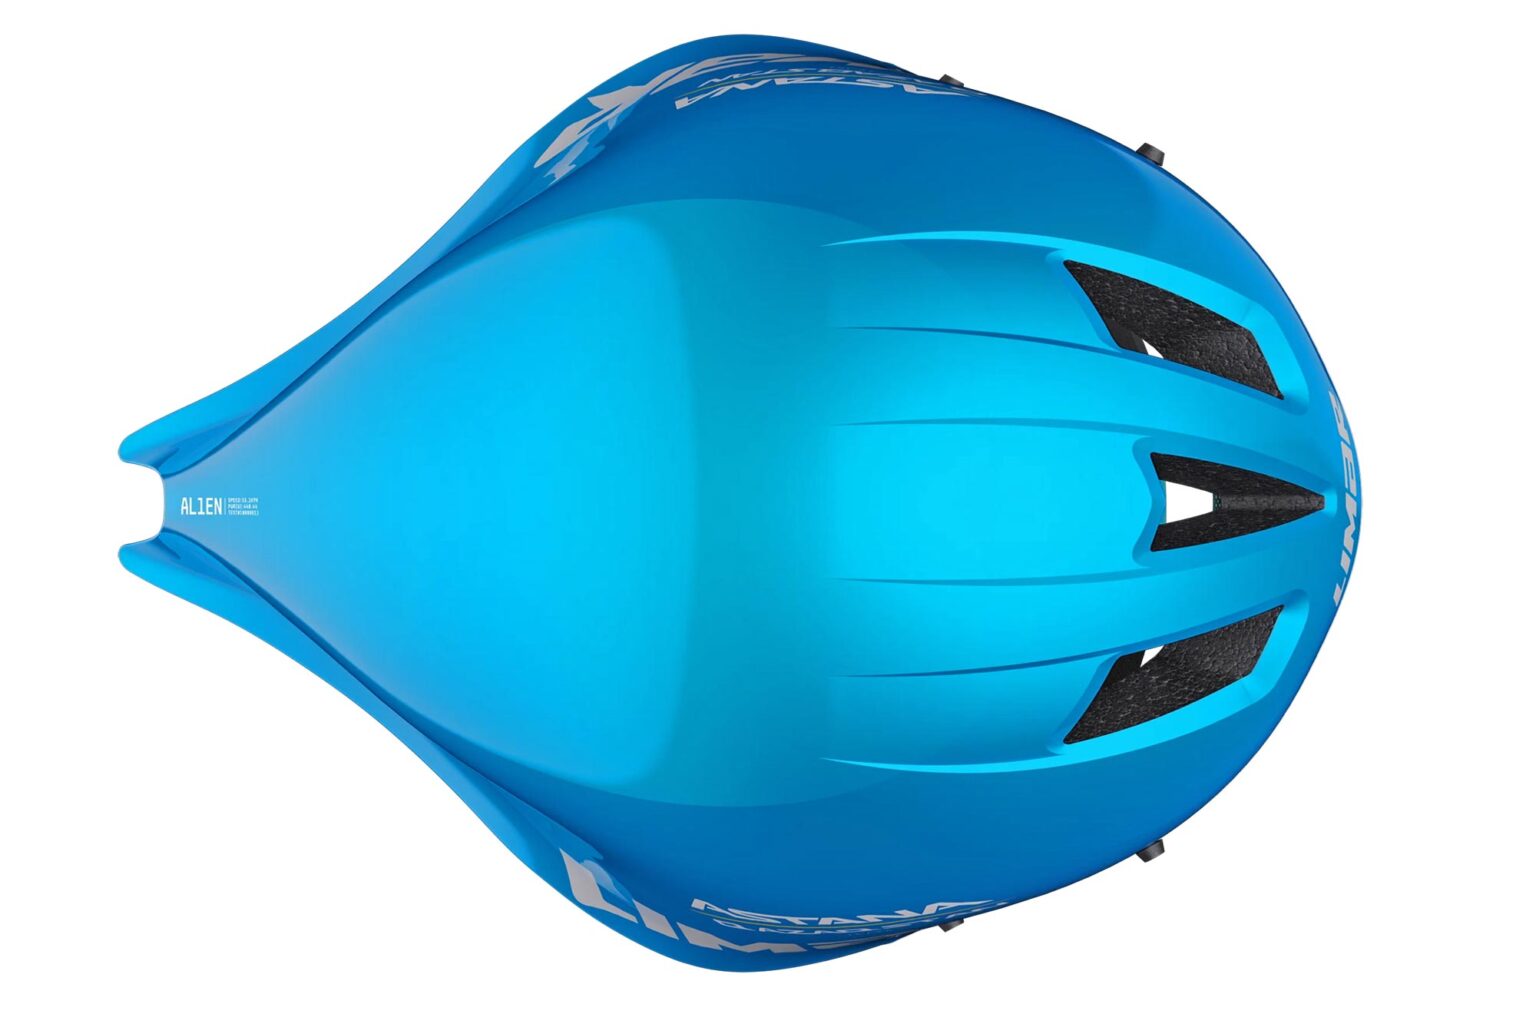 Limar Alien wide aerodynamic time trial helmet, top